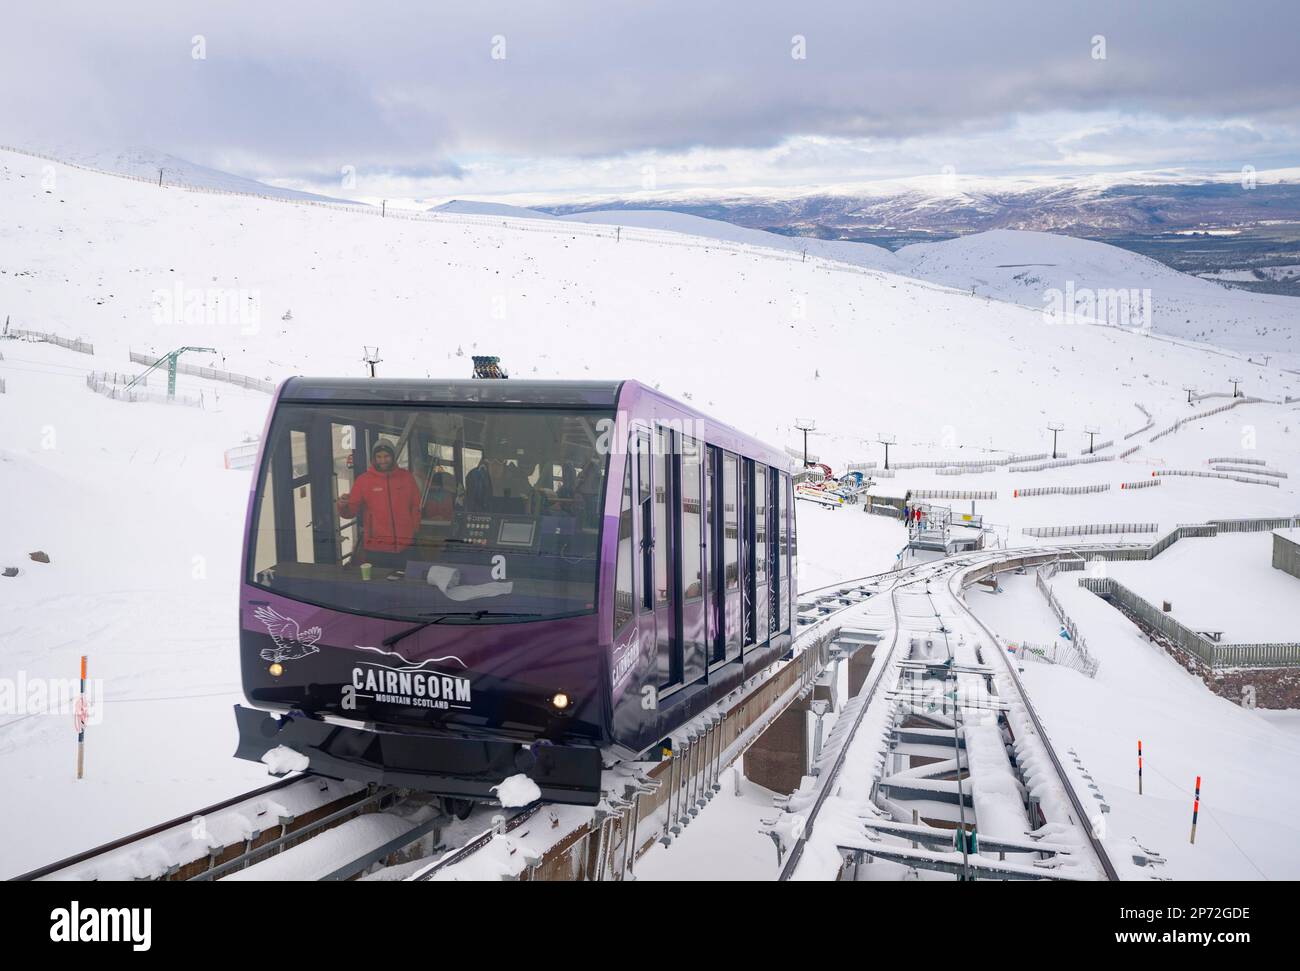 La nuova funicolare Cairngorm Mountain Railway, riaperta di recente, trasporta gli sciatori fino alle piste sciistiche della zona sciistica di Cairngorm, vicino ad Aviemore, Scozia, Regno Unito Foto Stock